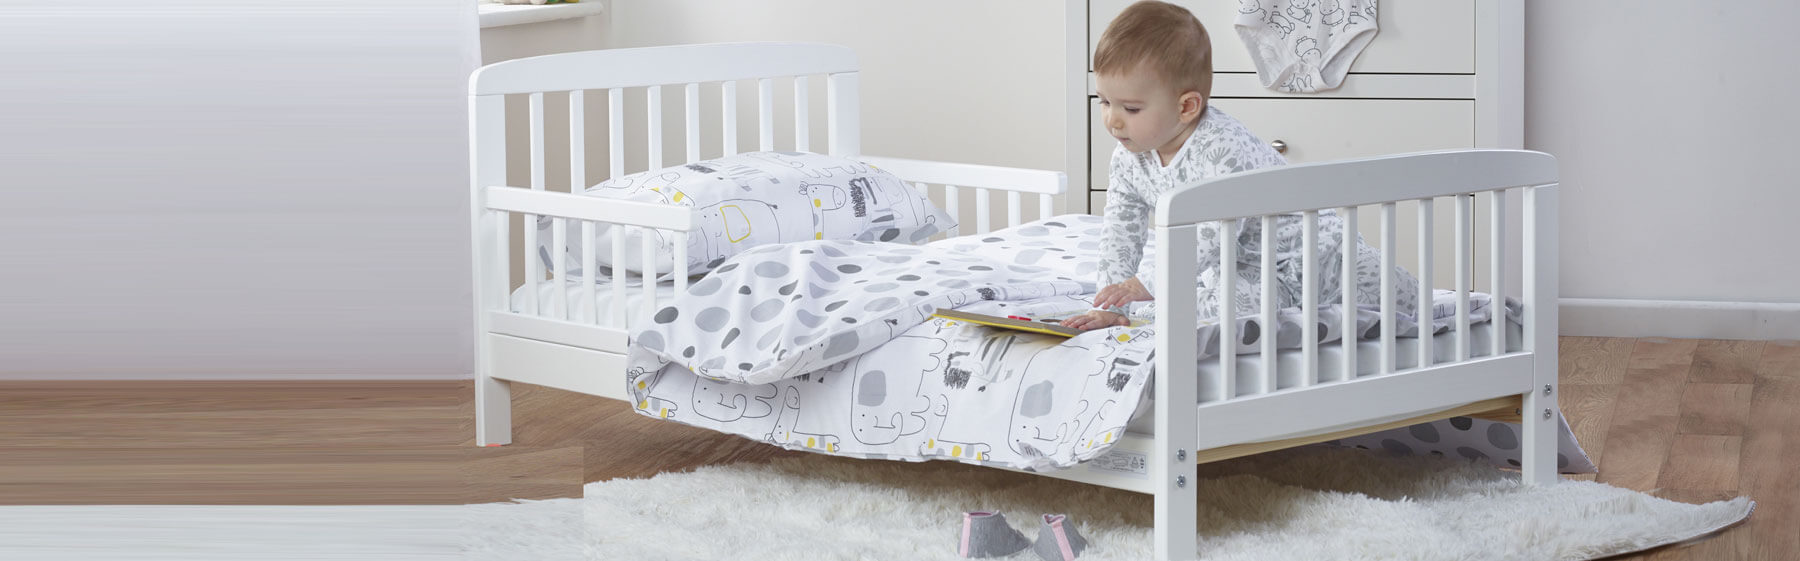 Catalog online de paturi copii si bebe